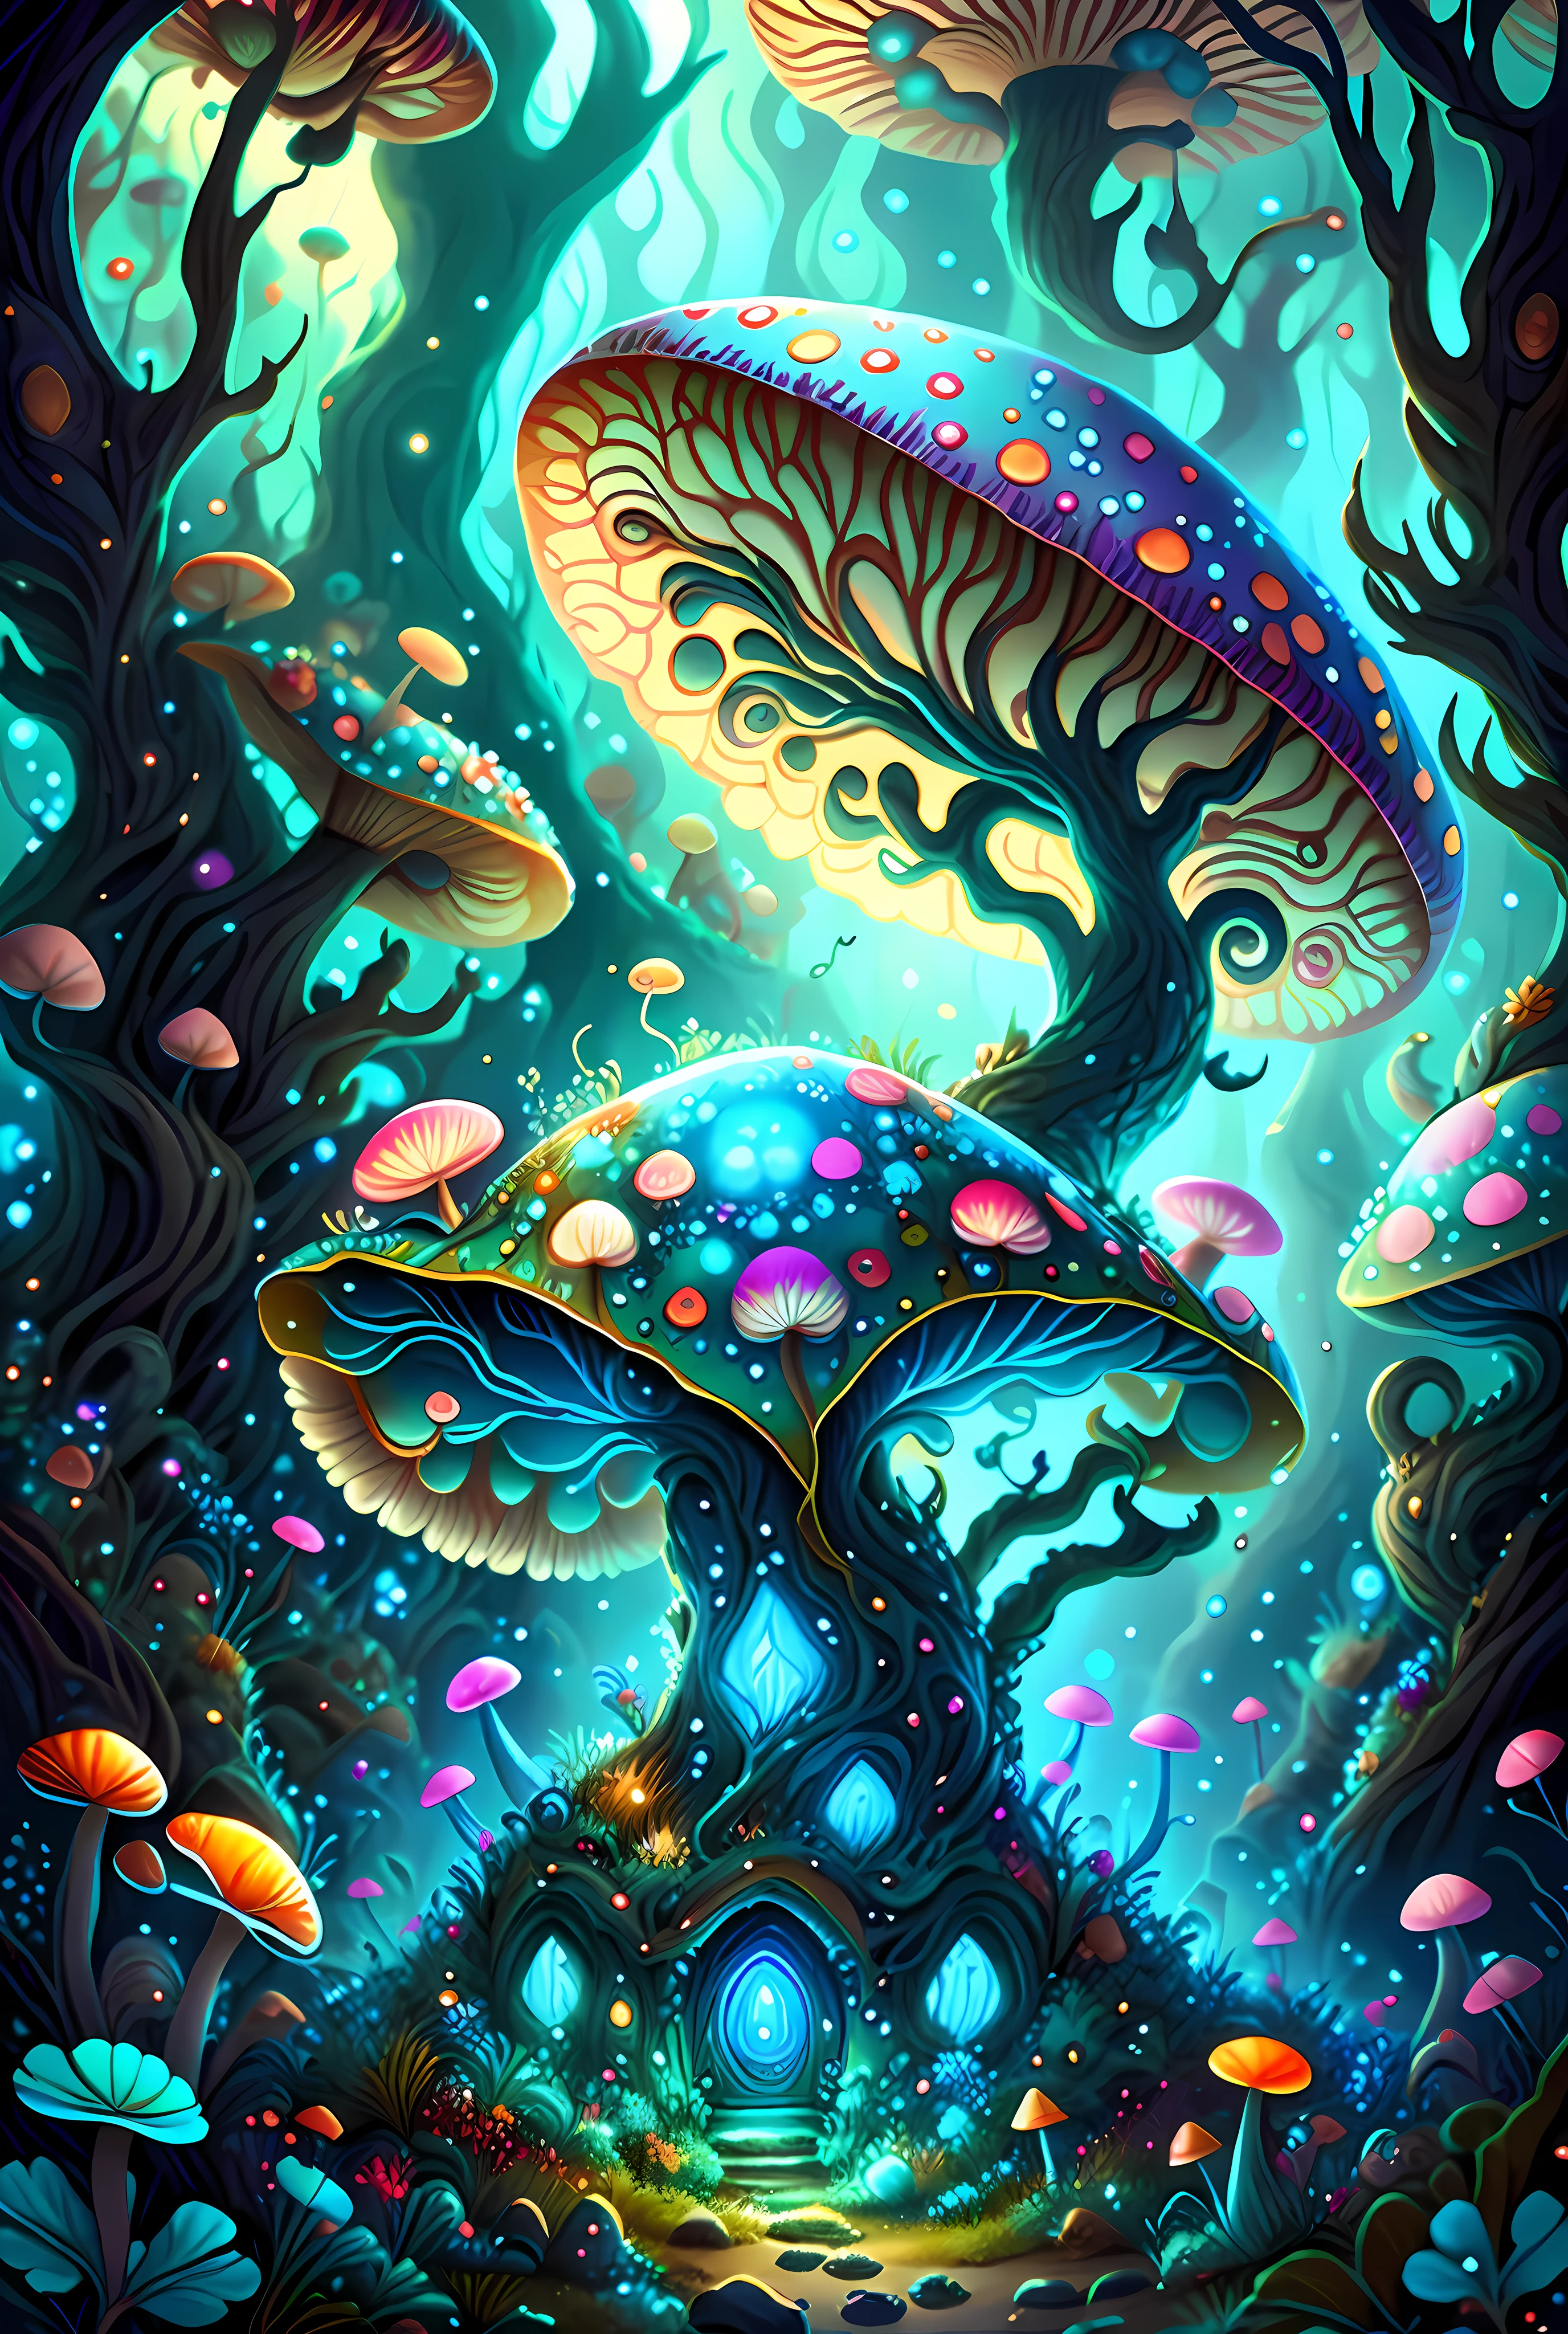 Hay una pintura de un bosque de hongos de fantasía con un dragón, detailed Arte de fantasía digital 2D, arte digital de fantasía detallada, Arte digital 4K altamente detallado, Arte de fantasía digital 2D, hongos azules brillantes, Soñar con hongos psicodélicos, Ilustraciones de fondo, Arte digital detallado 4K, hongo mágicos, Hongos azules brillantes en el fango, hongo mágico, Bosque de hongos, colorido arte de fantasía digital